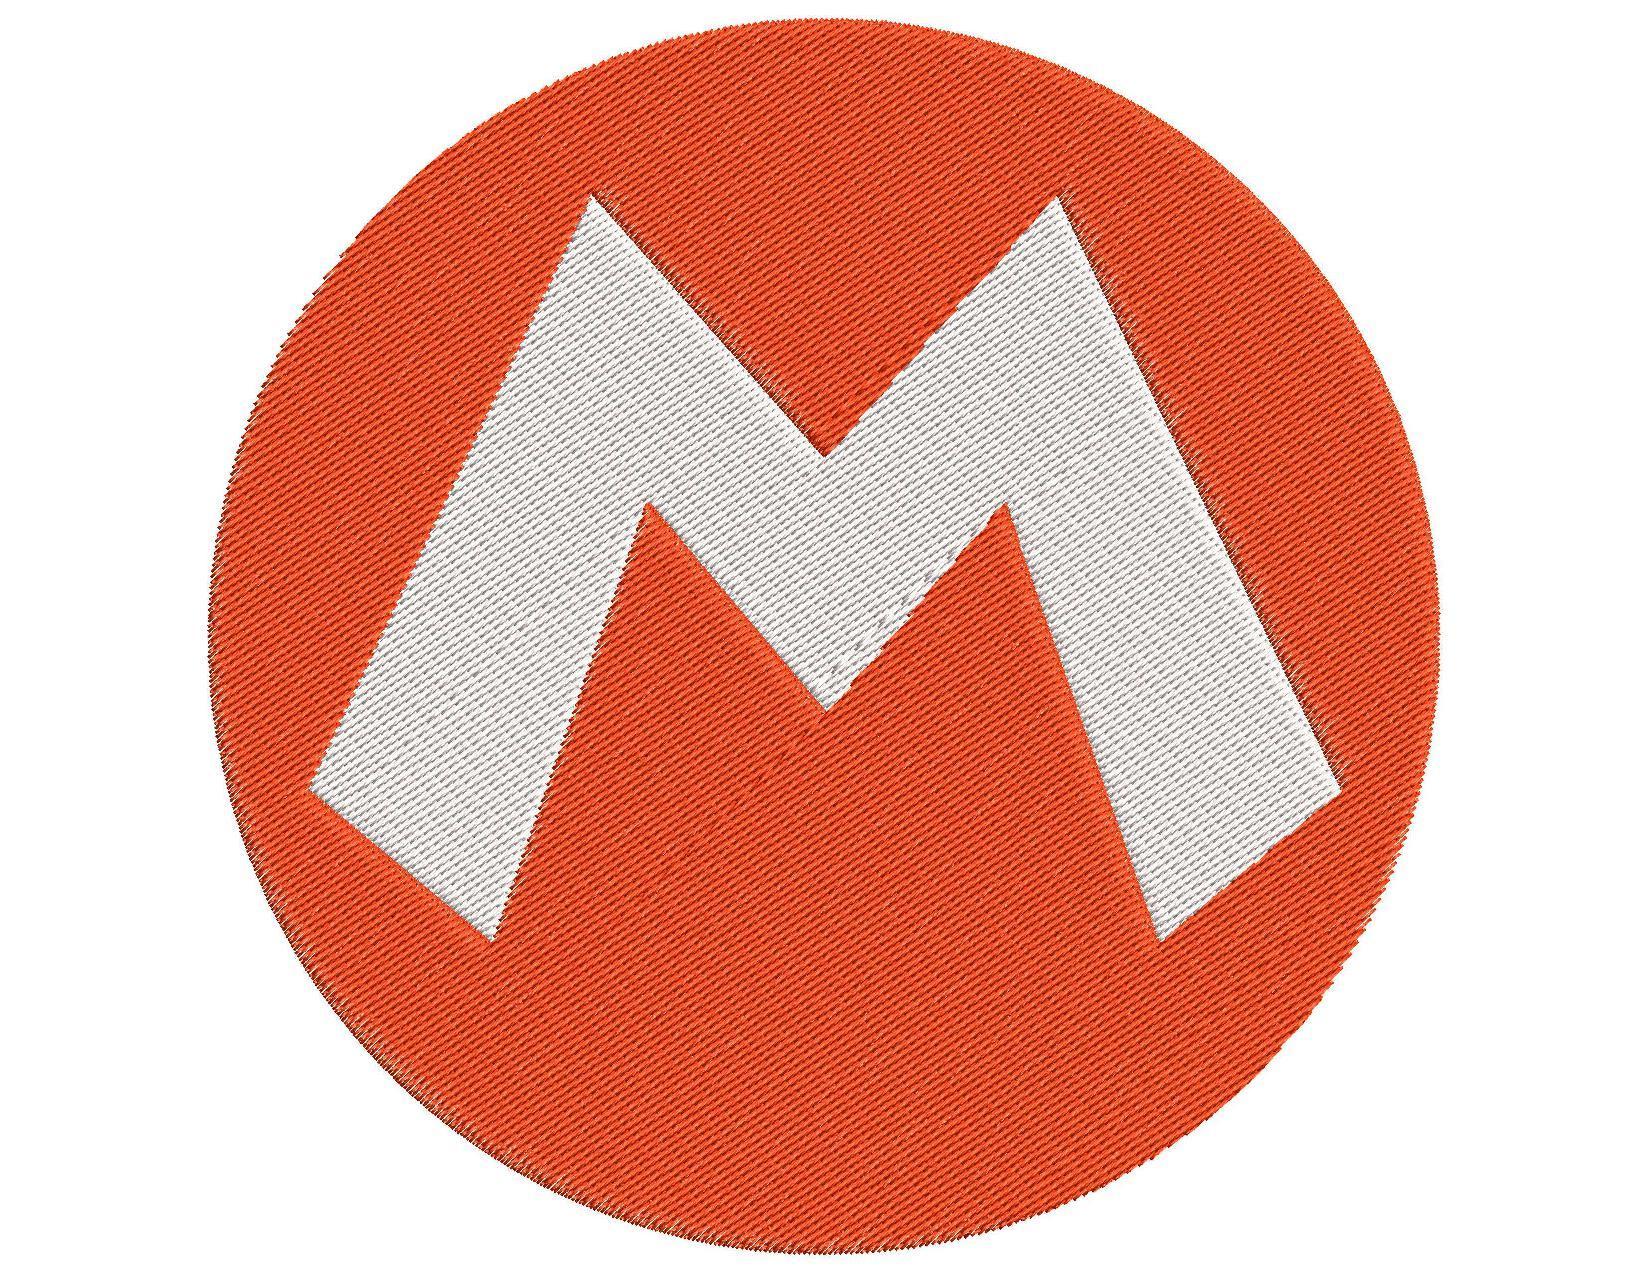 Mario Logo - Super Mario logo M Embroidery Design